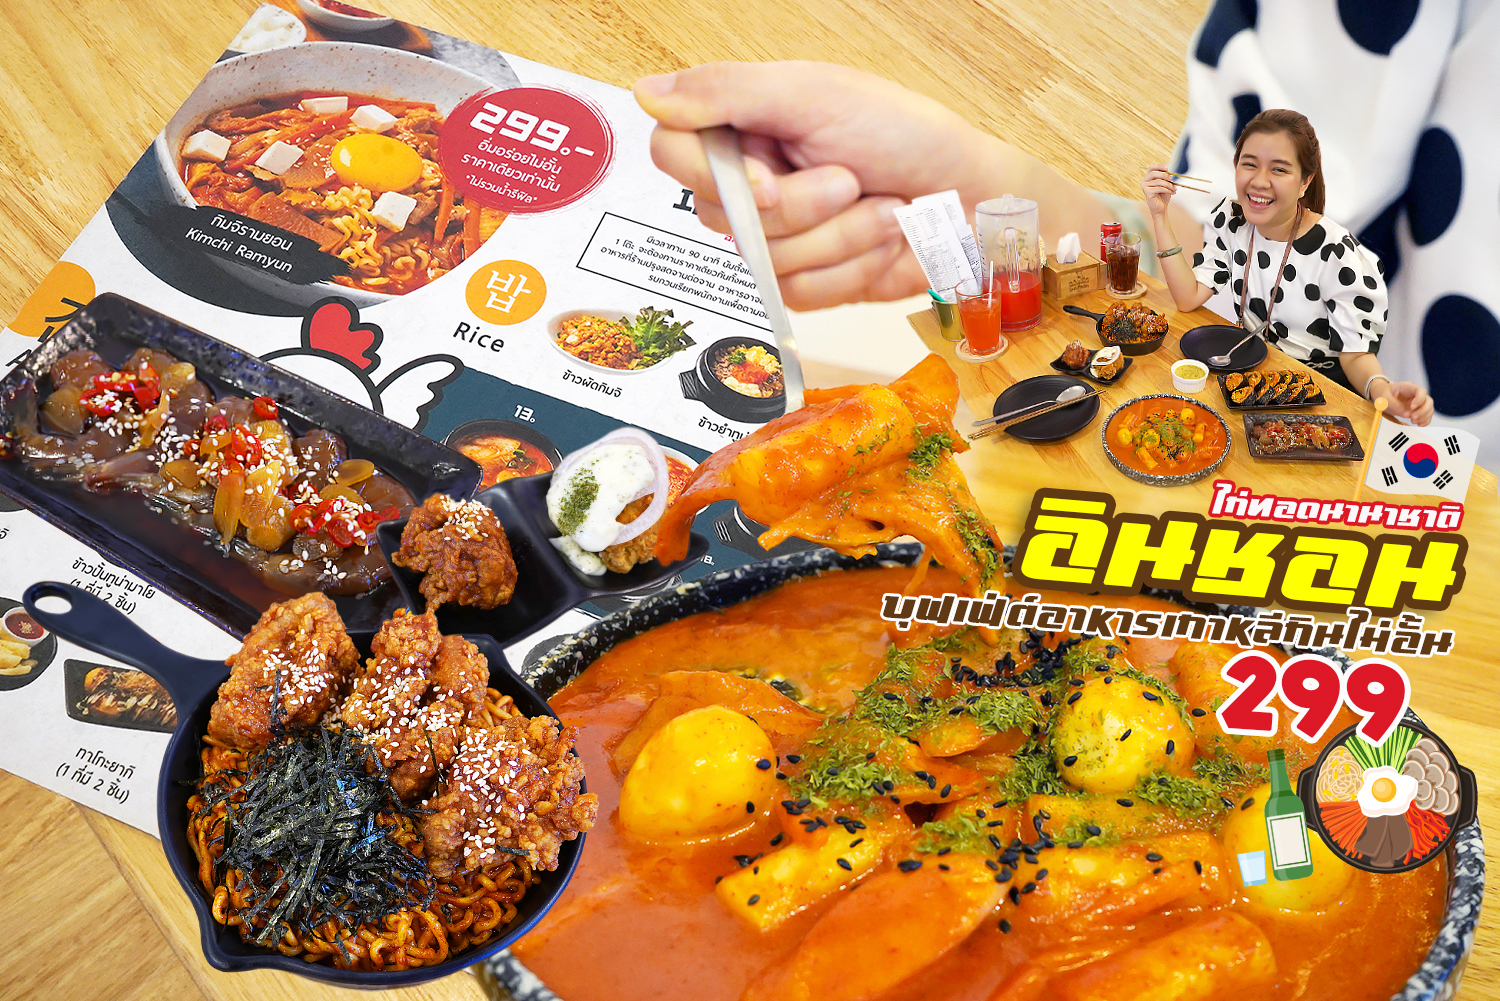 กินไก่ทอดนานาชาติ อาหารเกาหลีกว่า 40 เมนูไม่อั้น มีกุ้งดองเกาหลีด้วยน้า… @Int.Chon (อินชอน) ต้องไปกันแล้วมั้ง